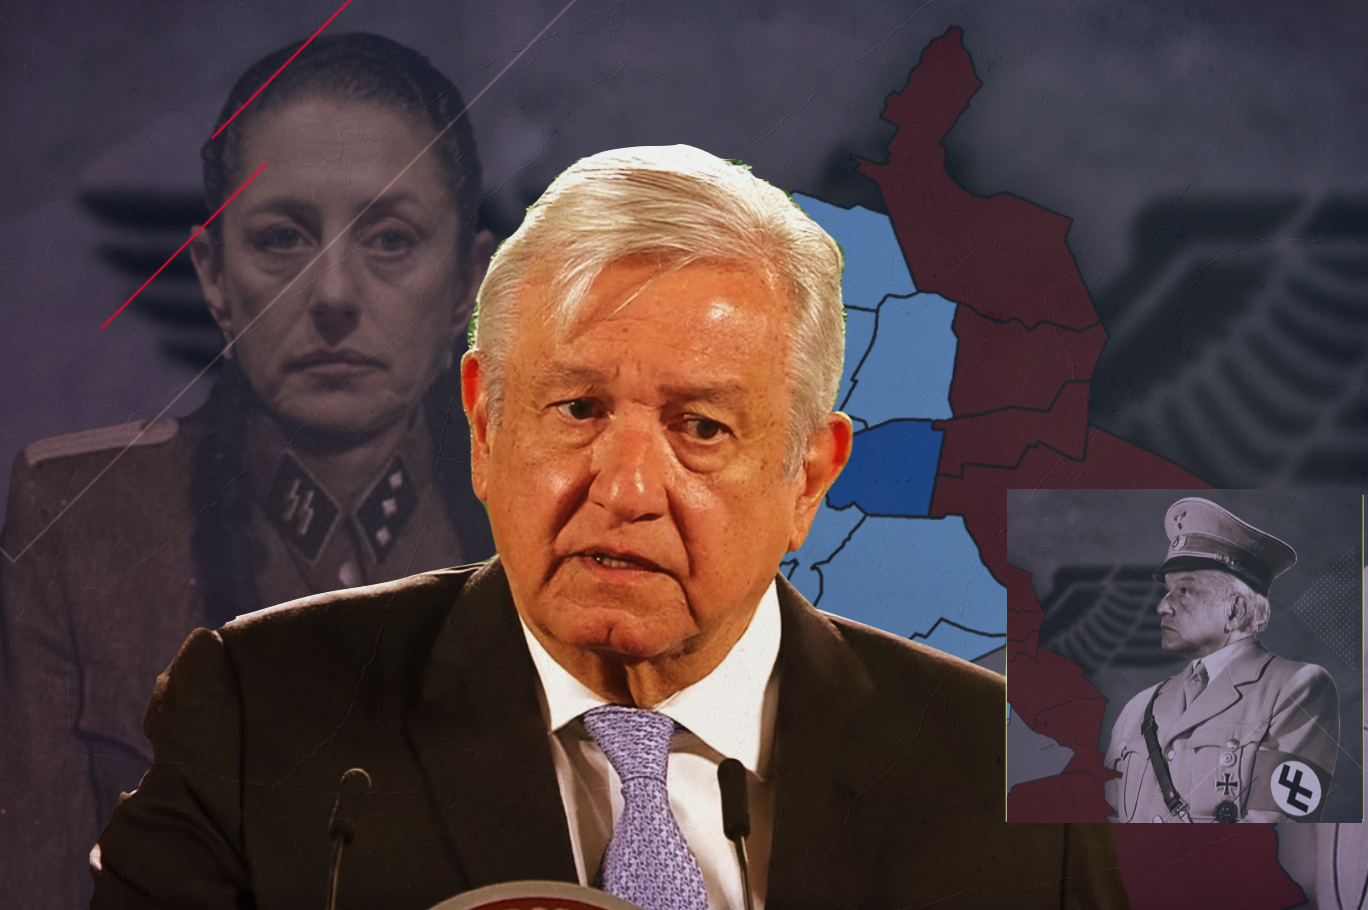 Para el Führer presidente López Obrador, la clase media mexicana es comparable con la sociedad fascista hitleriana. ¡Hail AMLO!